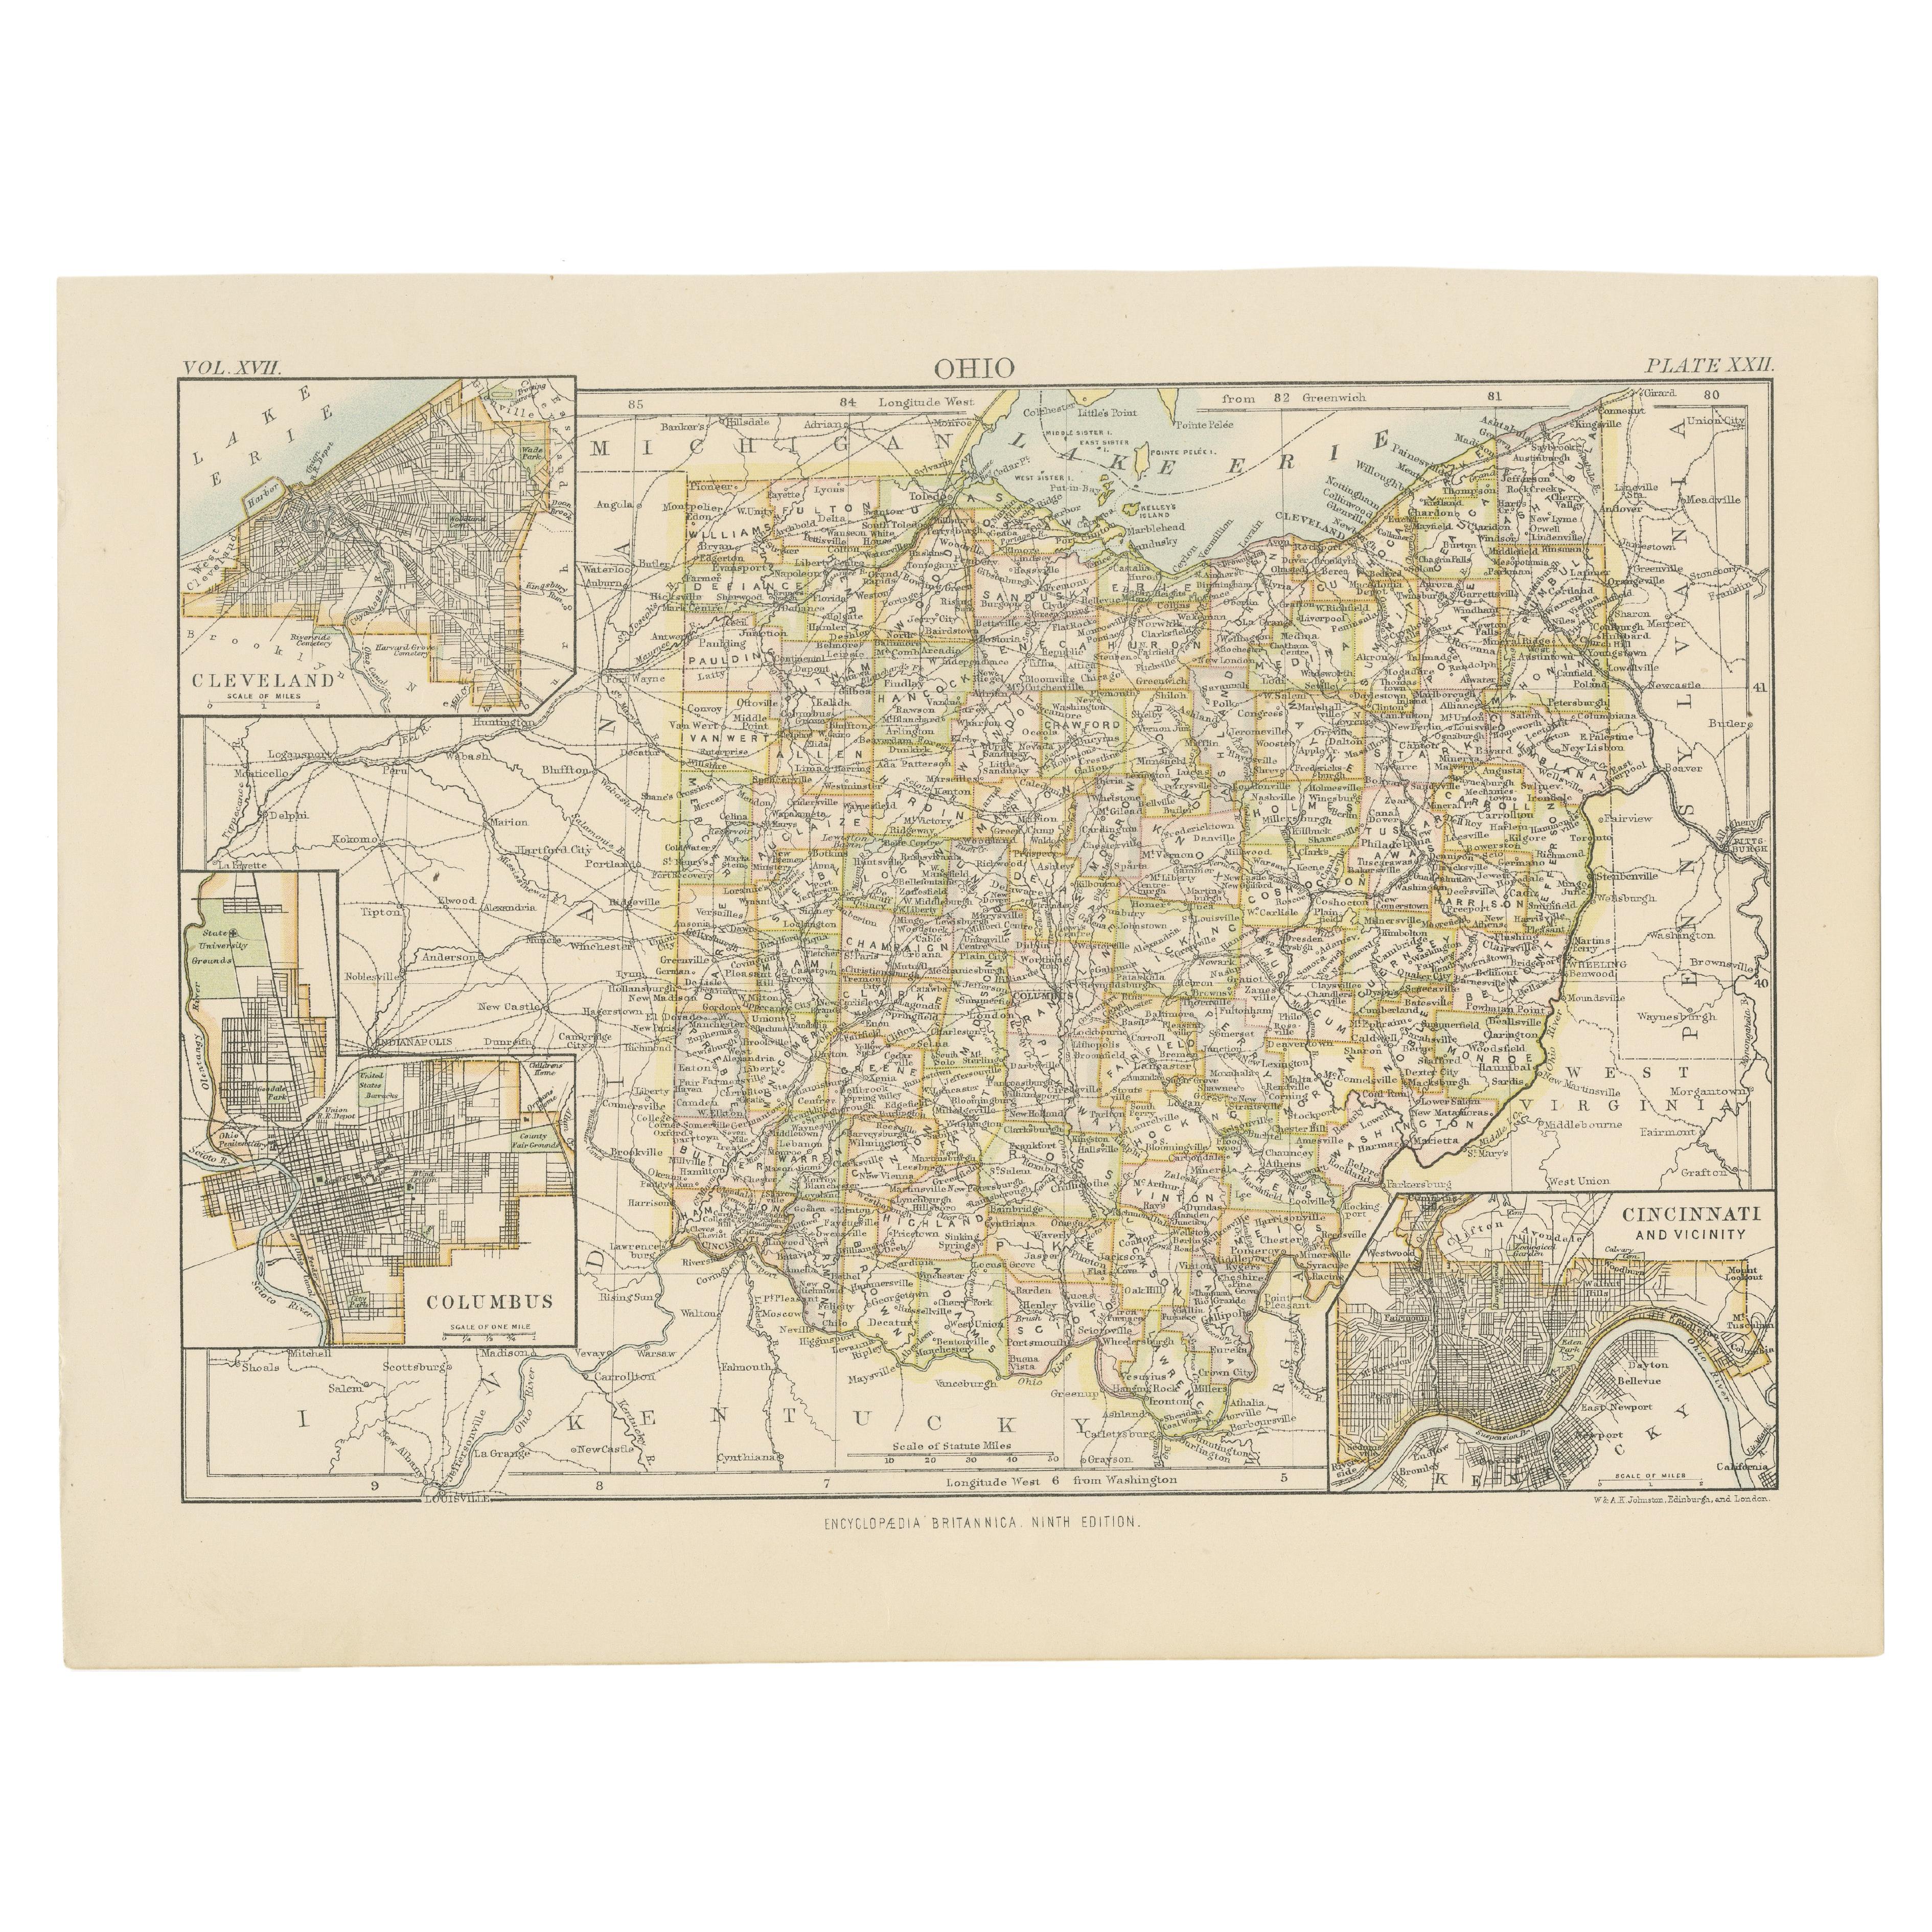 Carte ancienne de l'Ohio, avec cartes encastrées de Cleveland, Columbus et Cincinnati